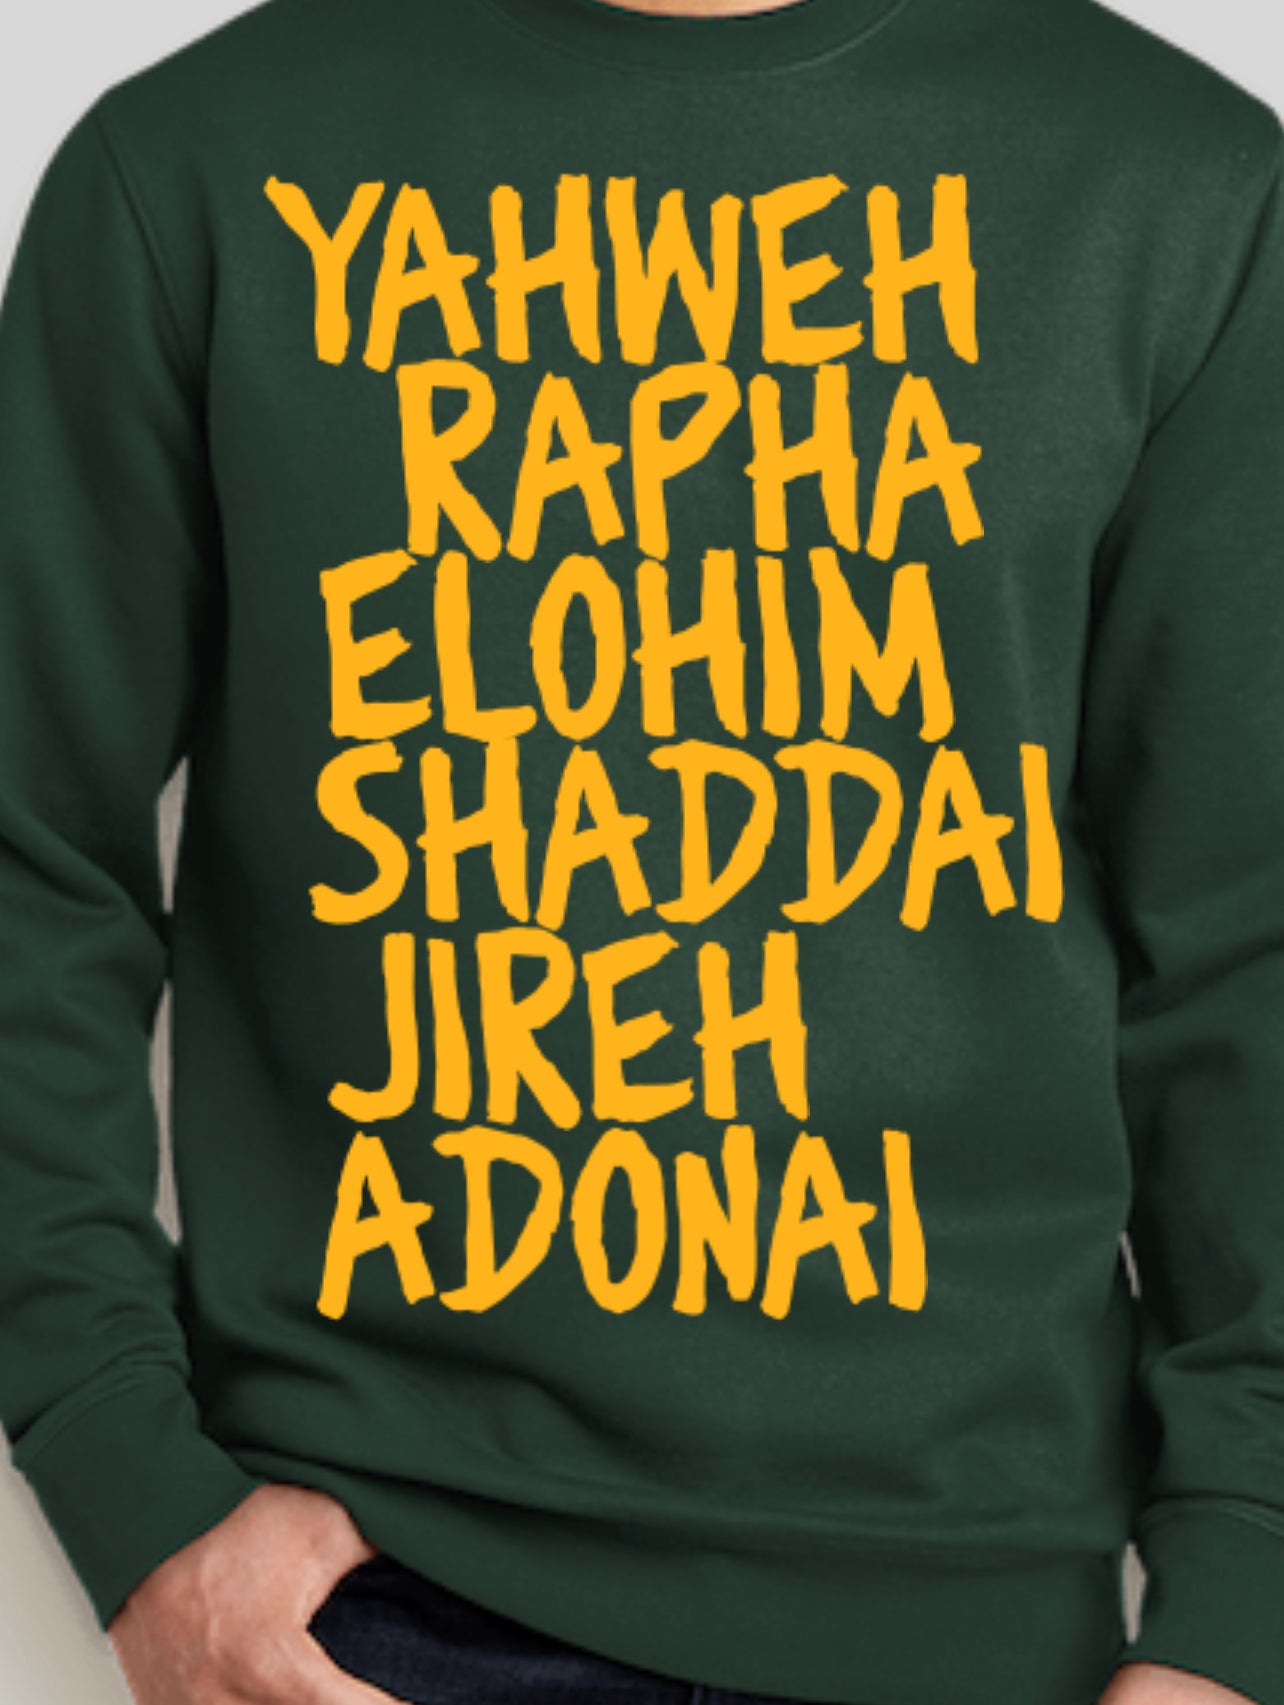 Yahweh Rafa Elohim Shaddai Jireh Adonai T-shirt 